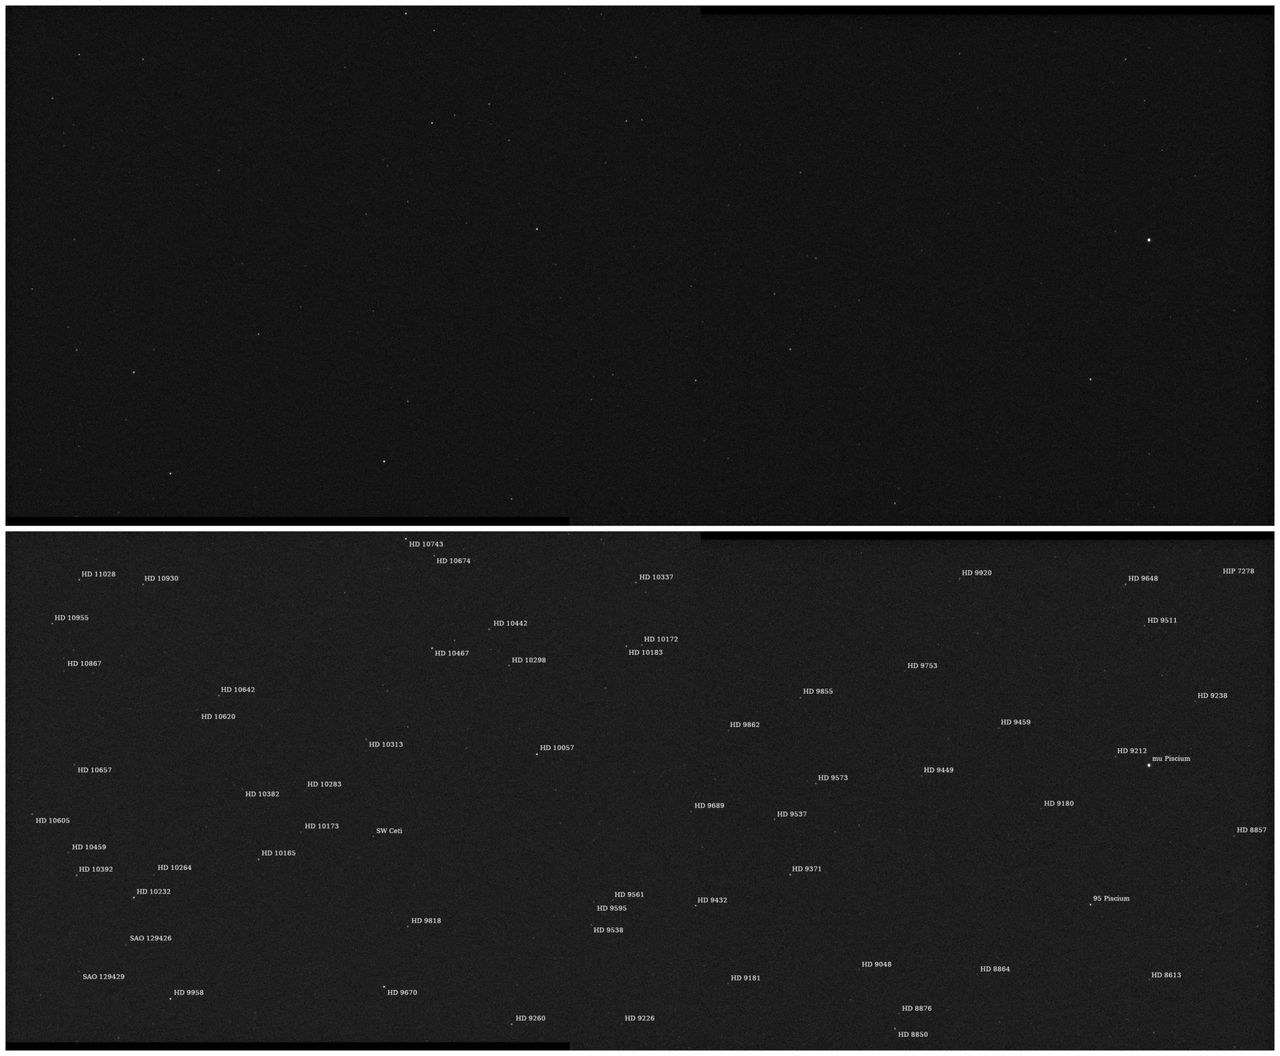 Pierwsze obrazy dostarczone na Ziemie przez sondę Psyche. Mozaika przedstawia gwiazdy w konstelacji Ryb. U dołu znajduje się wersja mozaiki na której oznaczono nazwy przedstawionych gwiazd